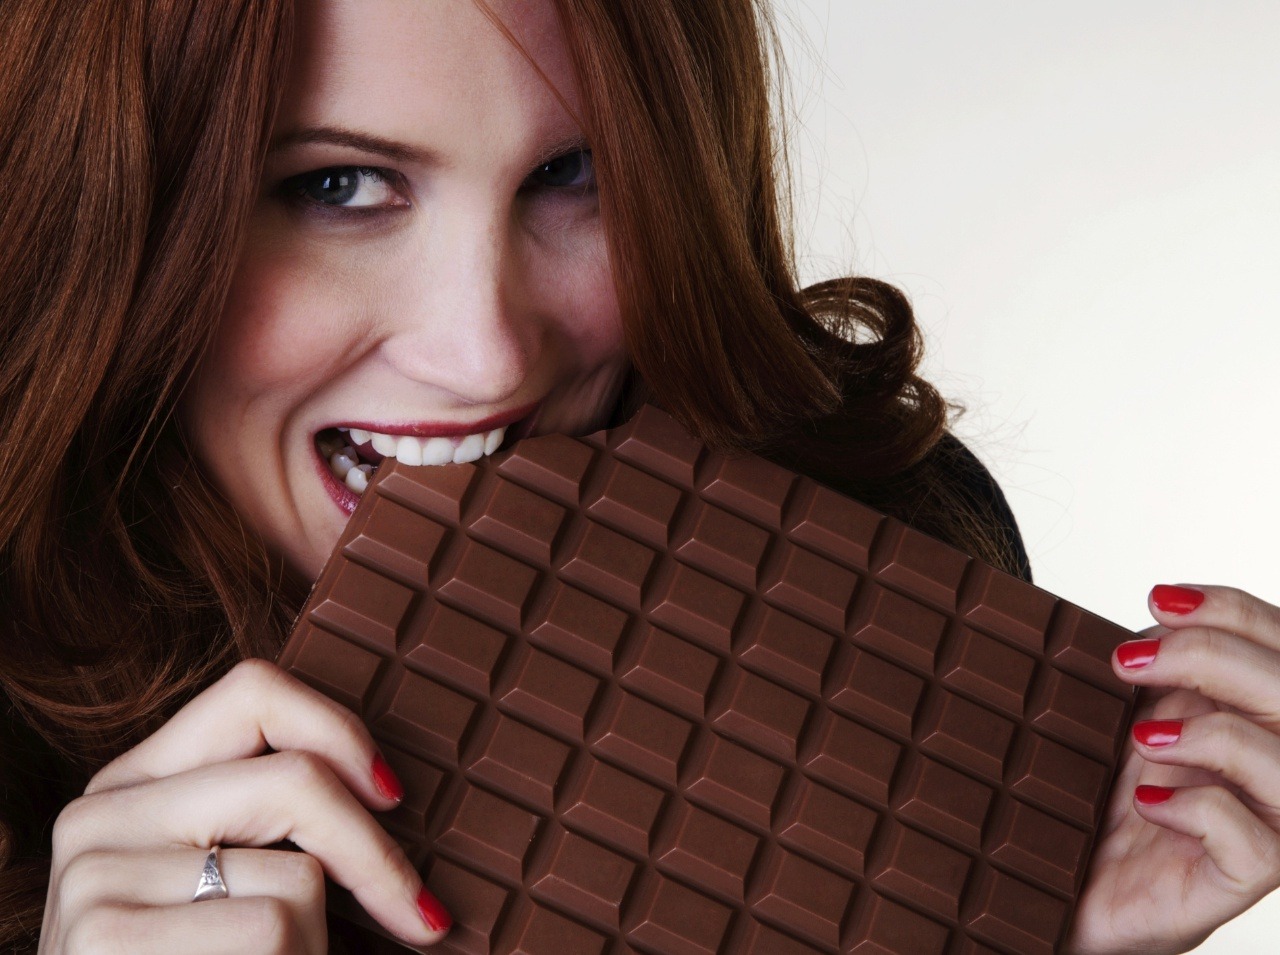 Doprajte si čokoládu v zdravej miere. Zlepší sa vám aj pamäť.